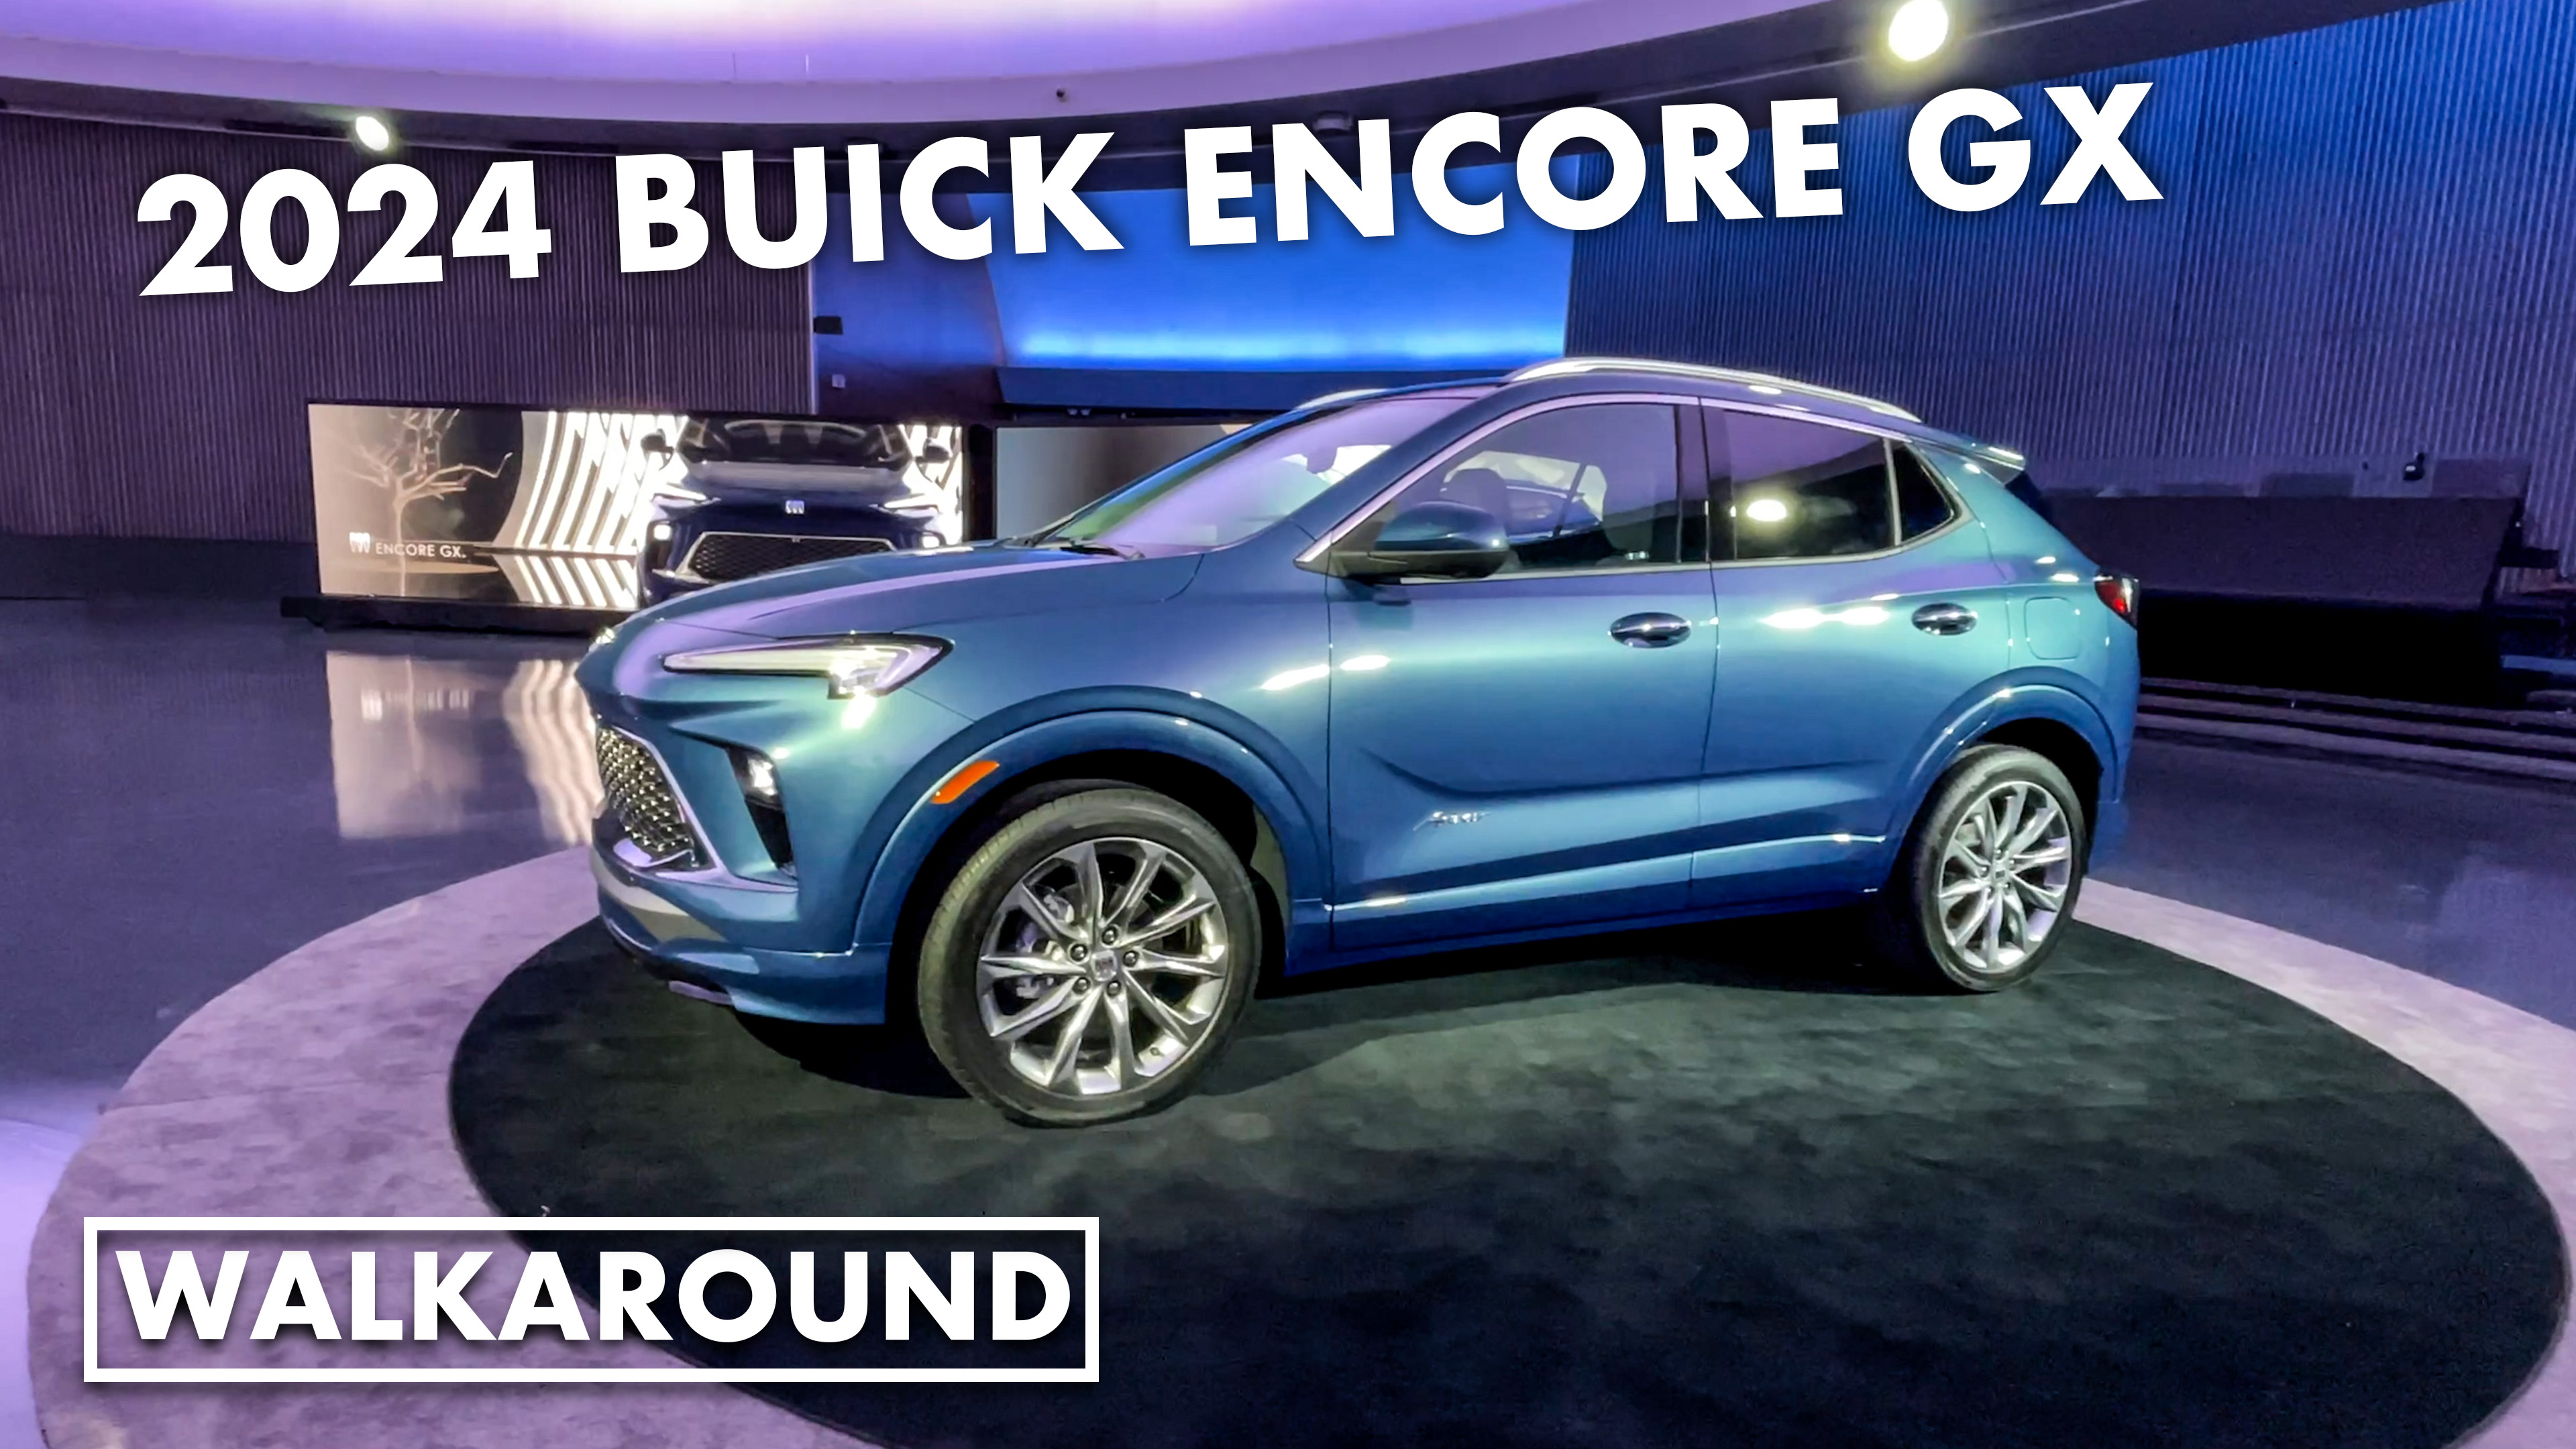 2024 Buick Encore GX walkaround